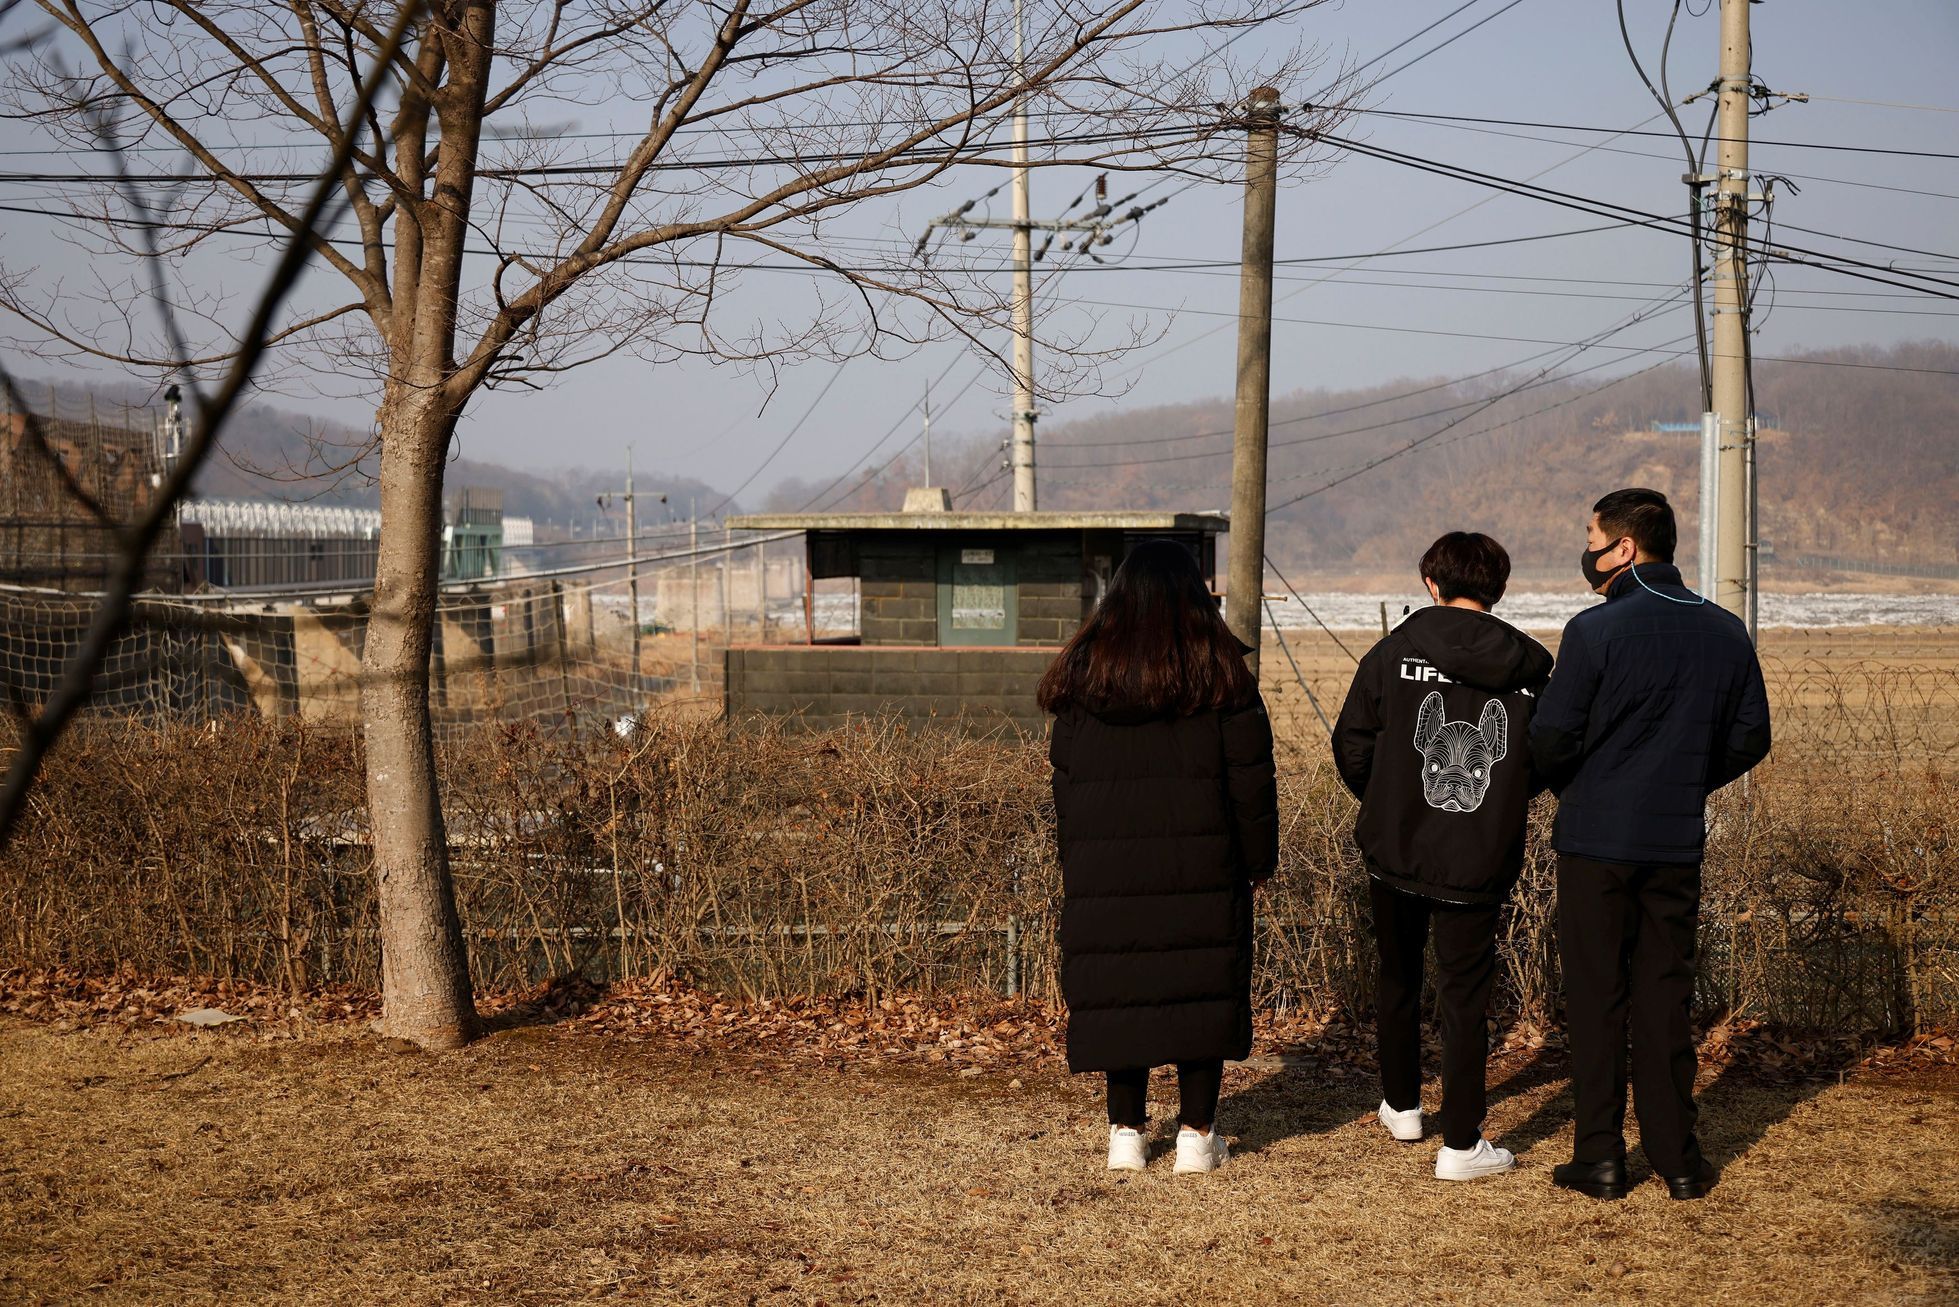 Ein Hochschulabschluss der DVRK reicht nicht aus.  Flüchtlinge aus dem Norden haben Probleme in Südkorea